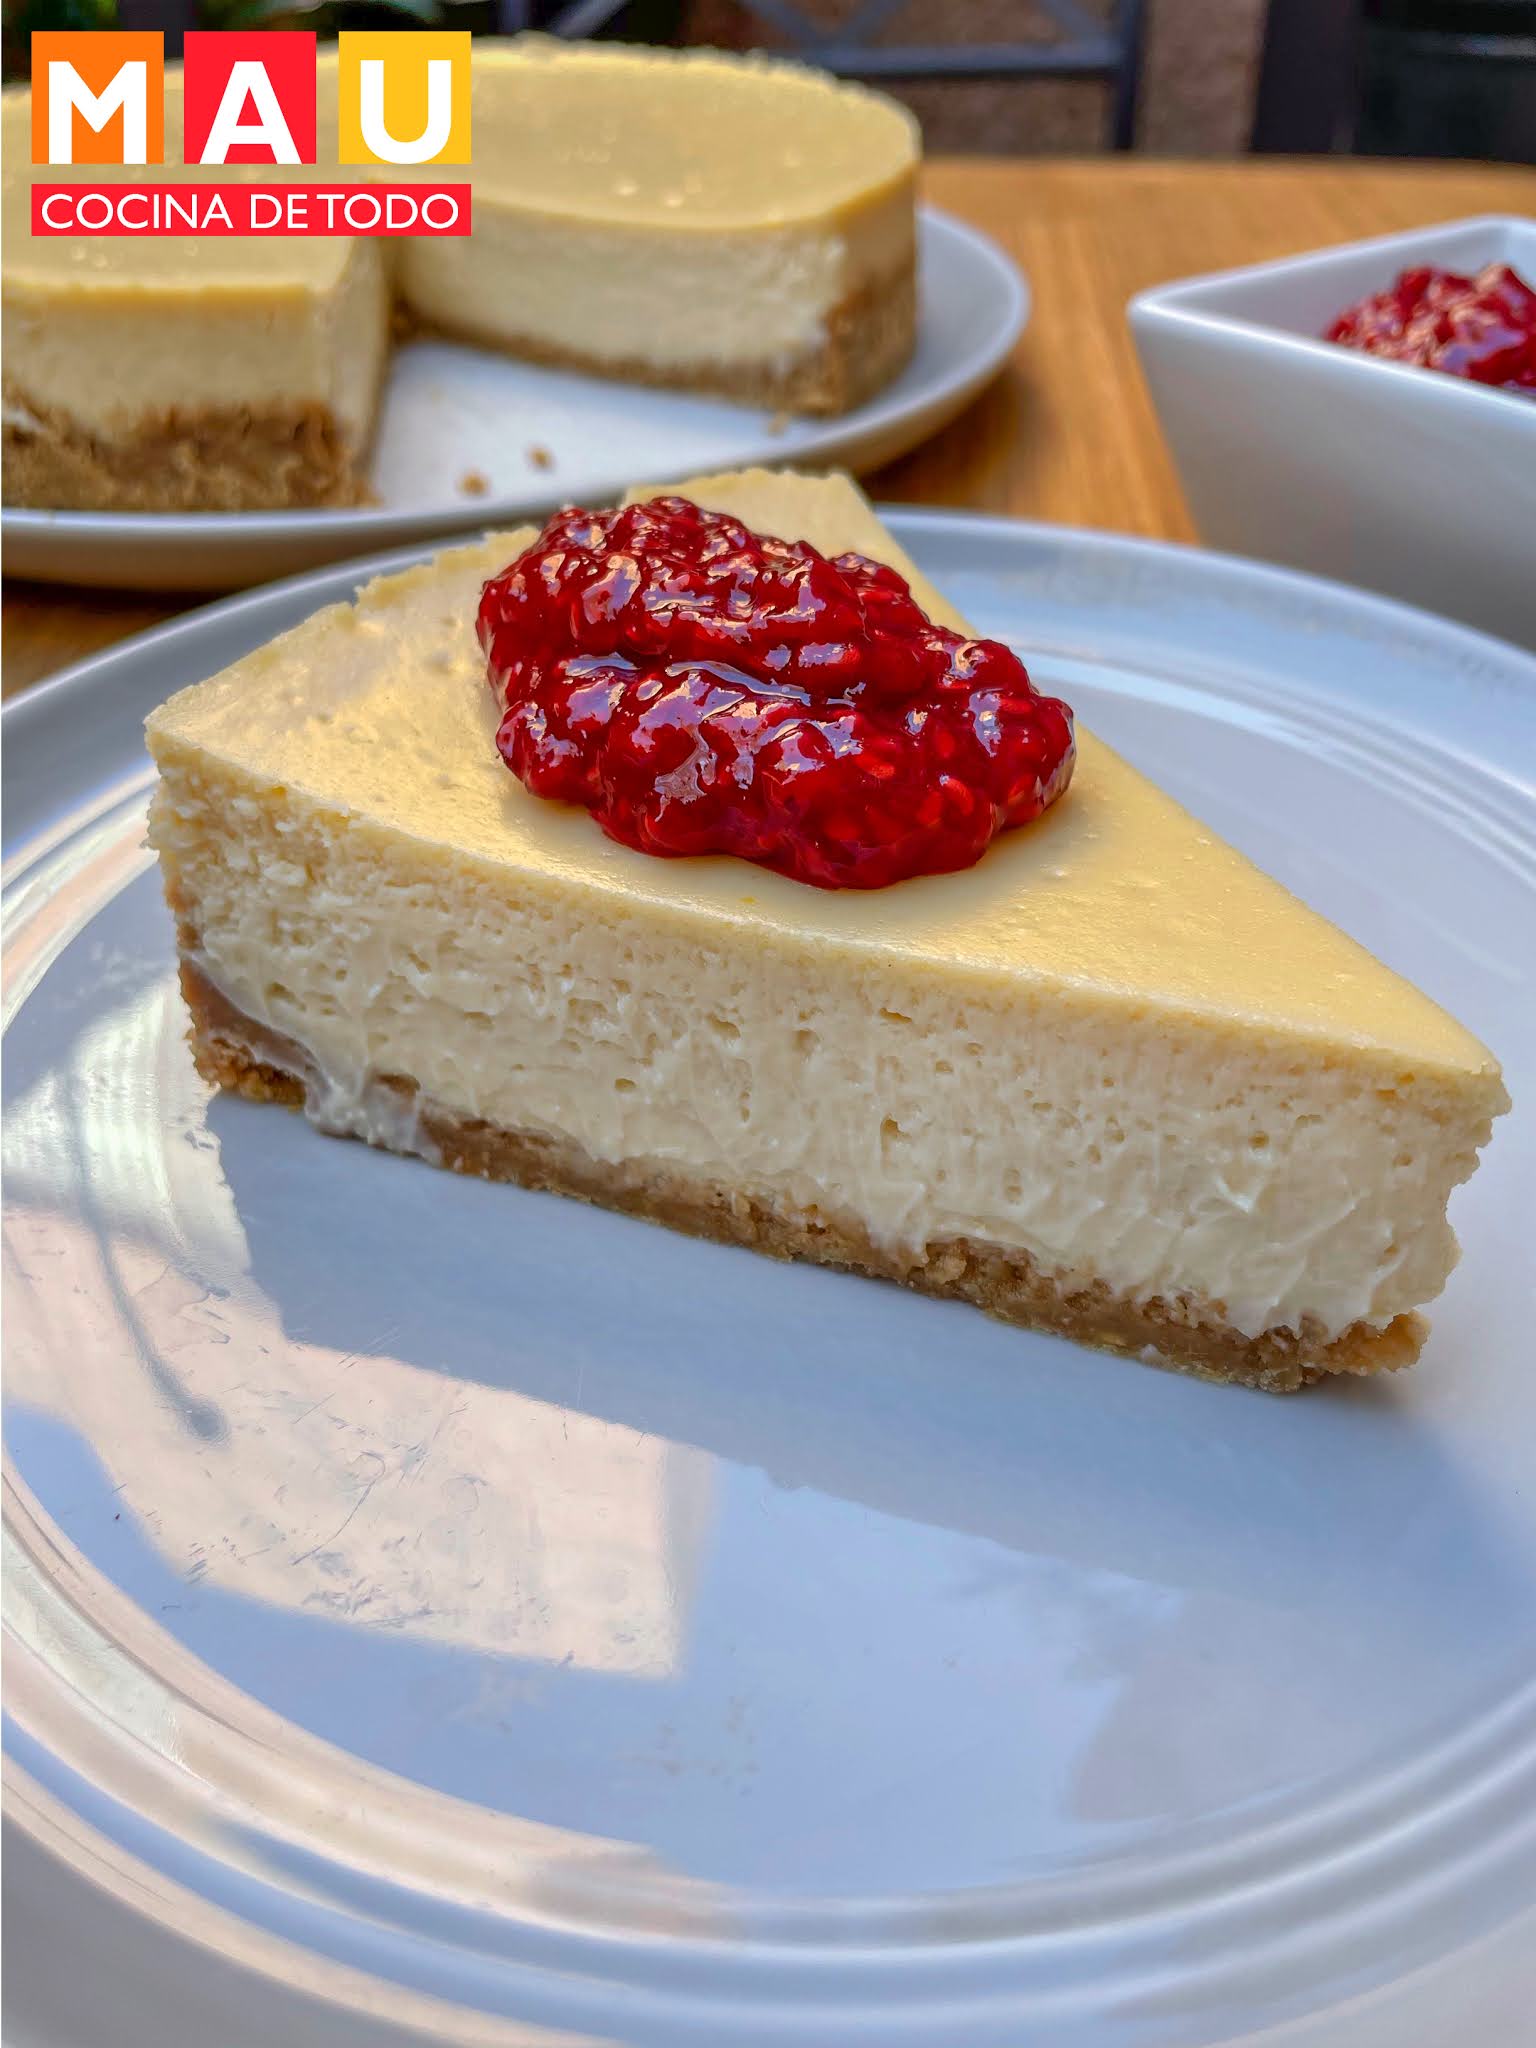 Mau Cocina de Todo: Cheesecake Tradicional (Pay de queso)